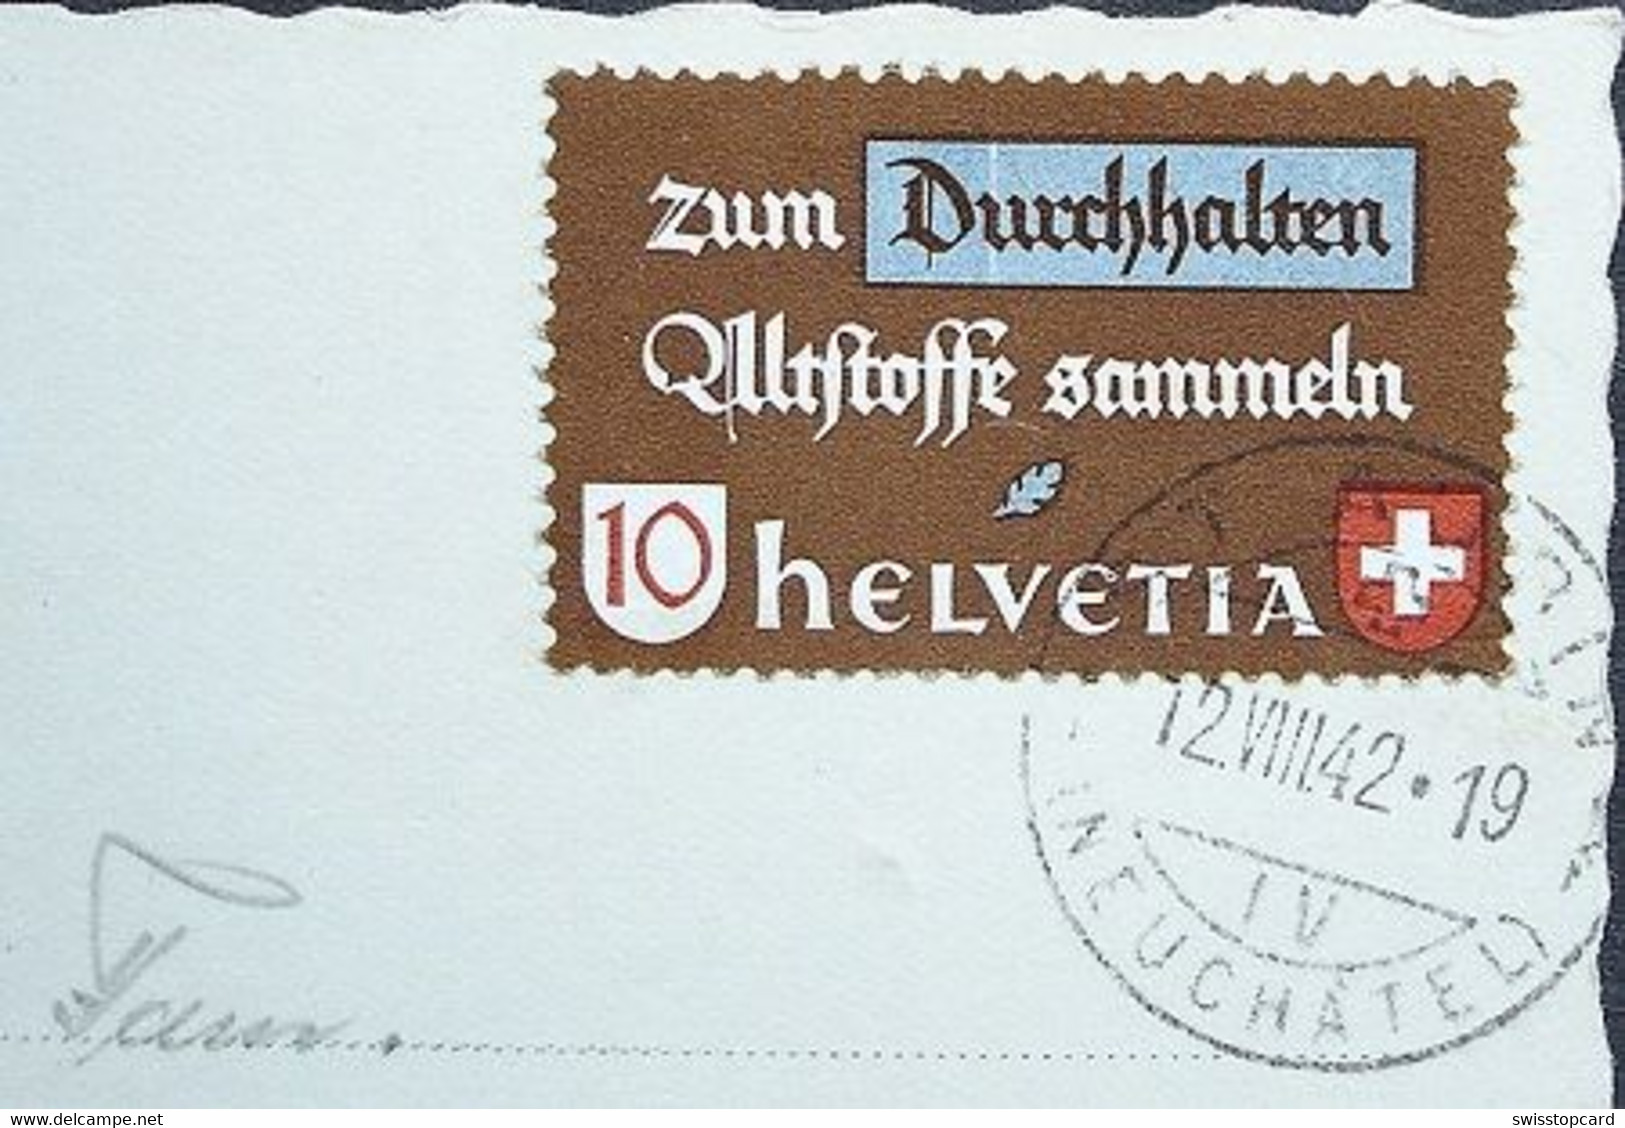 ST. AUBIN Gel. 1942 N. Basel Briefmarke Altstoffe Sammeln - Saint-Aubin/Sauges